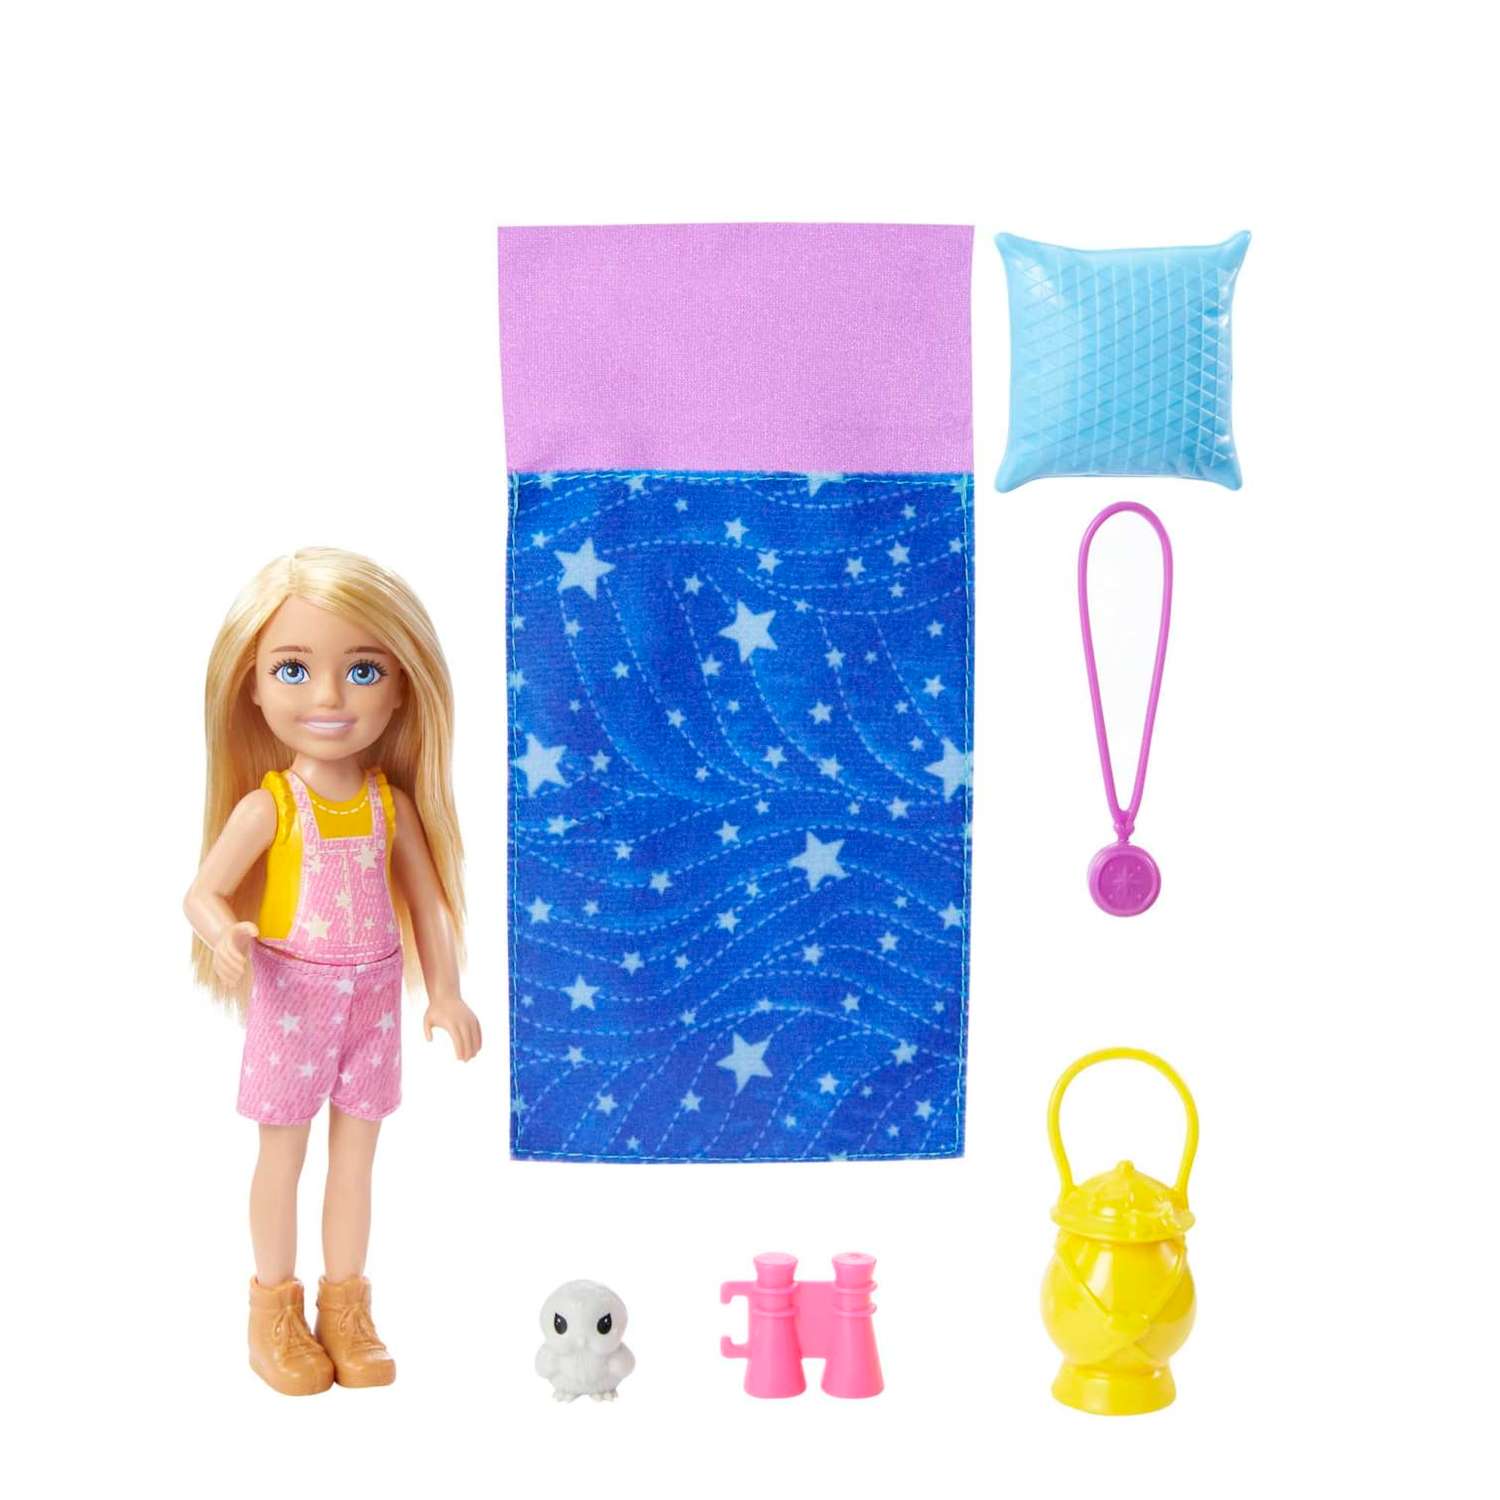 Кукла Barbie Color Reveal Челси в непрозрачной упаковке (Сюрприз) HDN77 HDN77 - фото 3